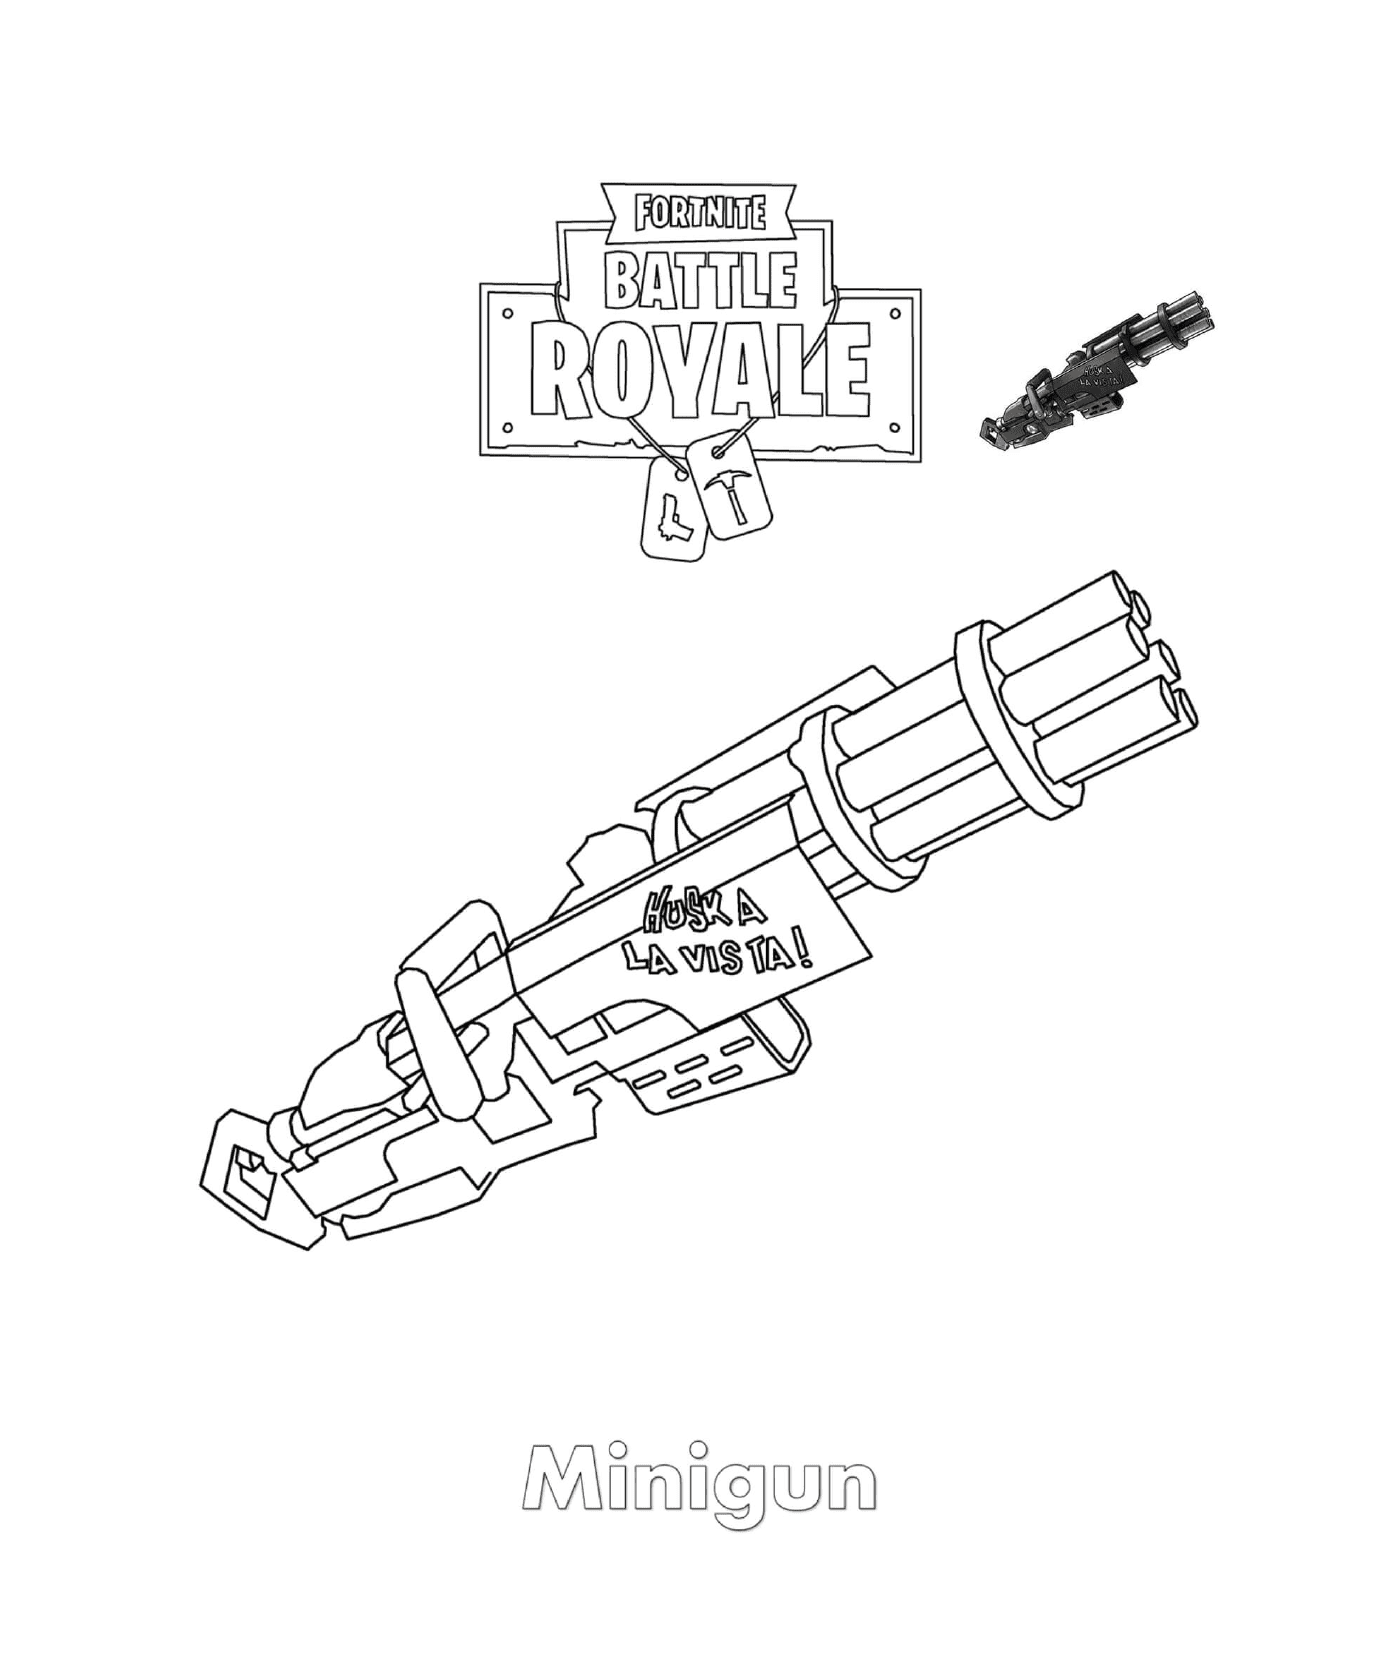  Minigun in Fortnite 